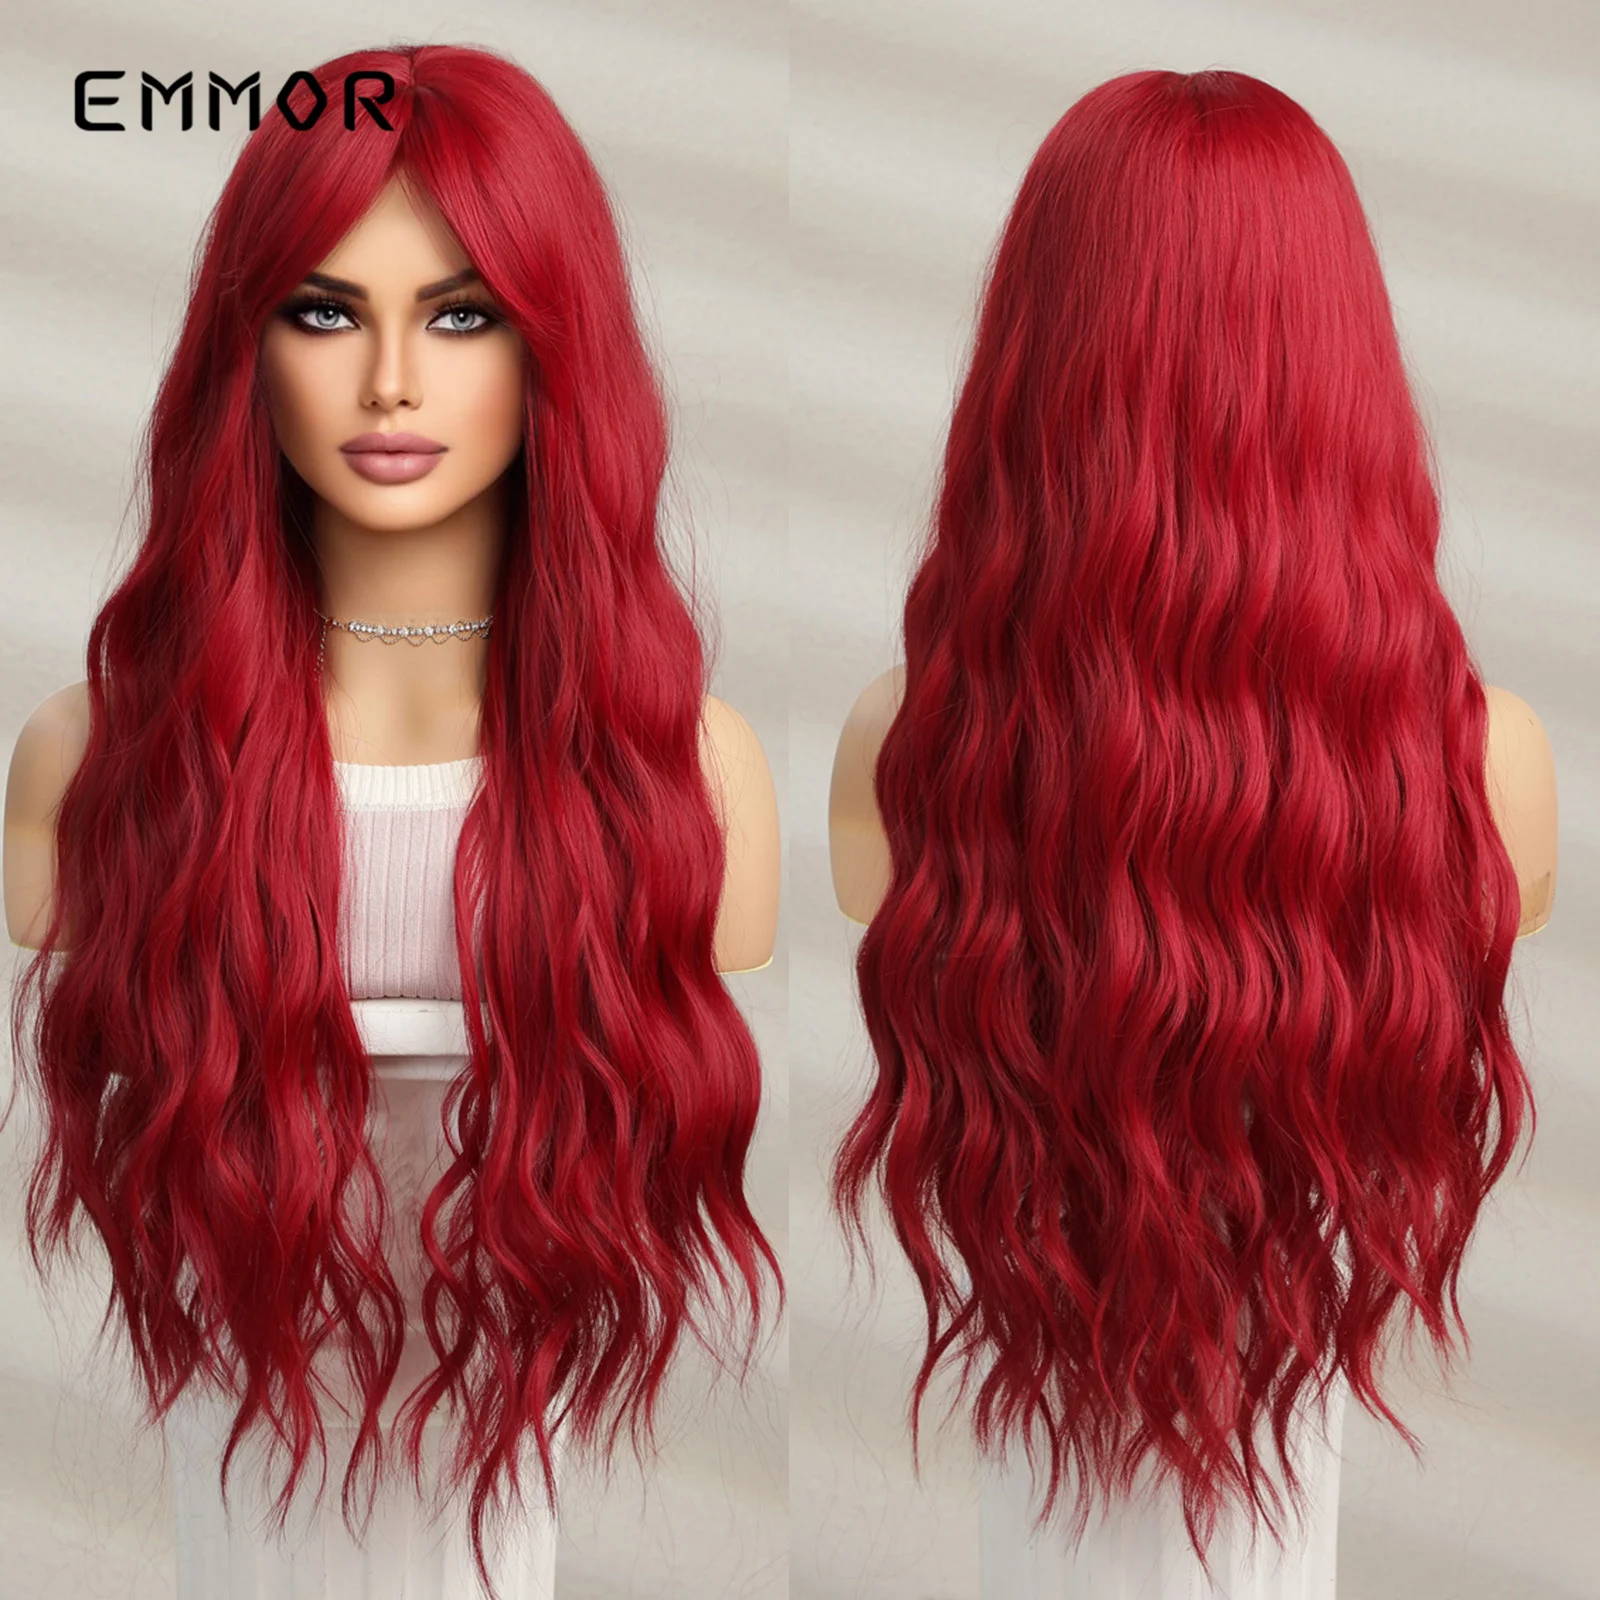 

Emmor длинный волнистый парик винно-Бордовый Красный хорошие синтетические парики с челкой для женщин Косплей вечерние натуральные волосы термостойкие волосы